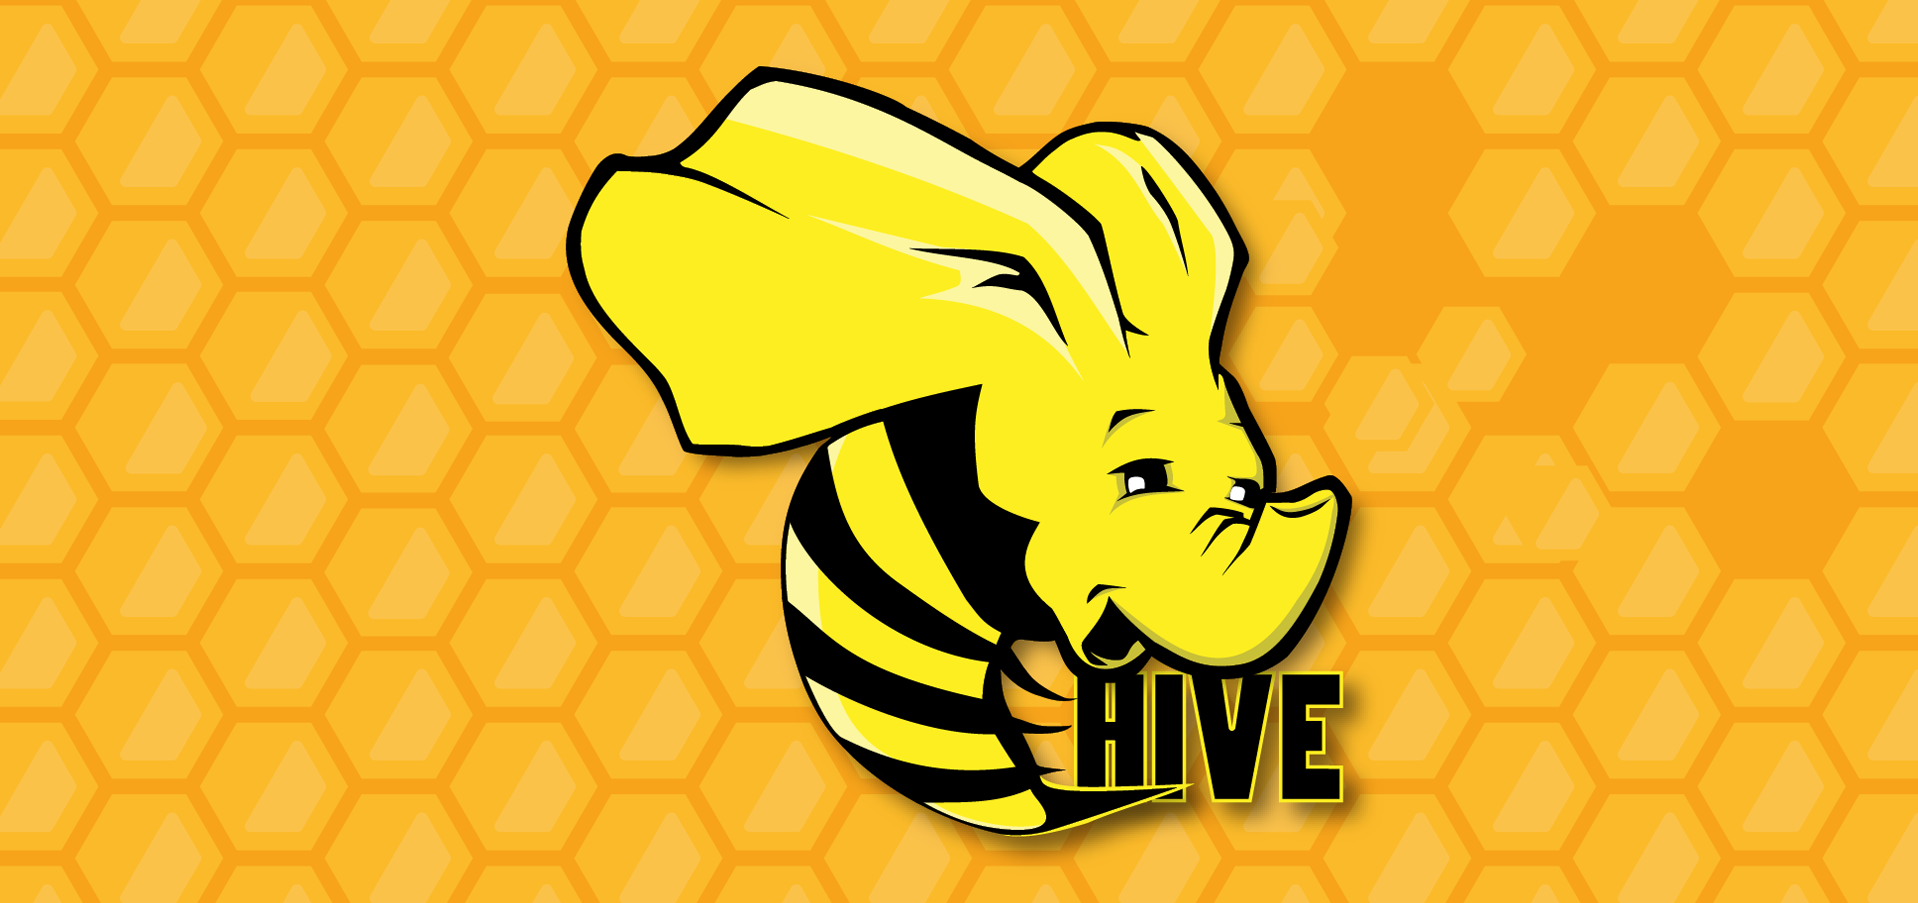 Hive